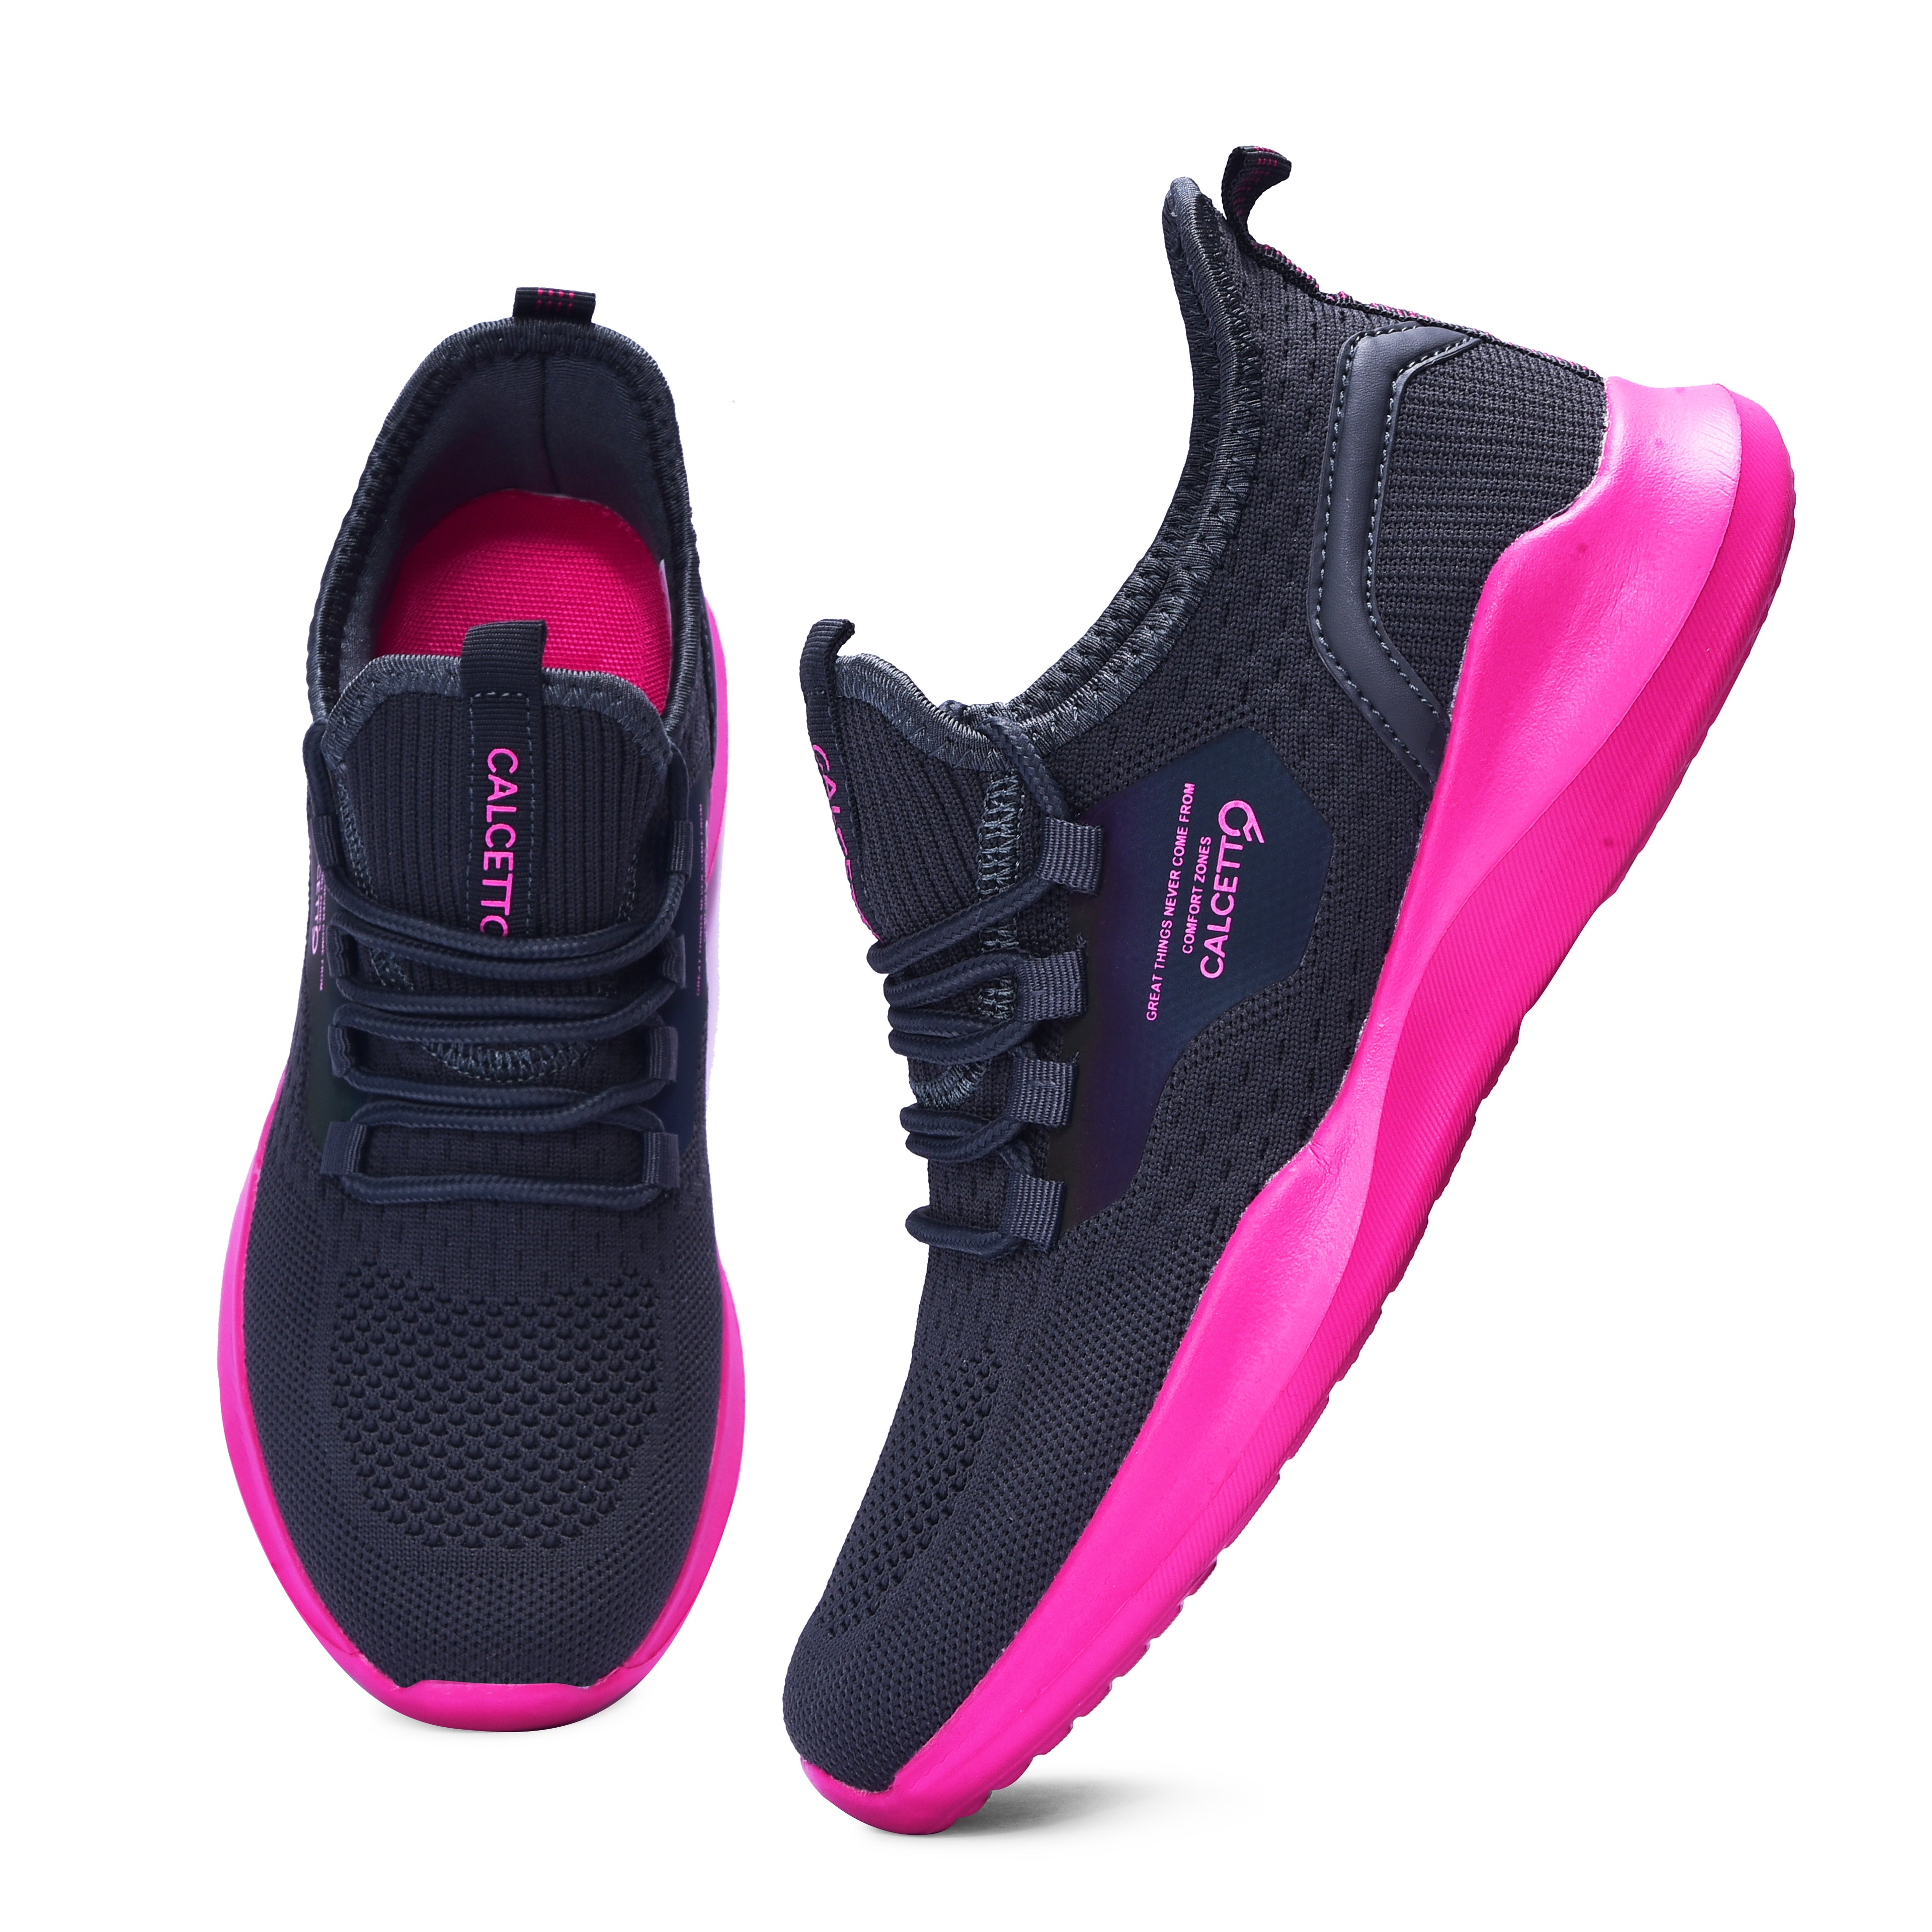 Calcetto CLT-9824 D Grey Fushia Casual Shoe For Women